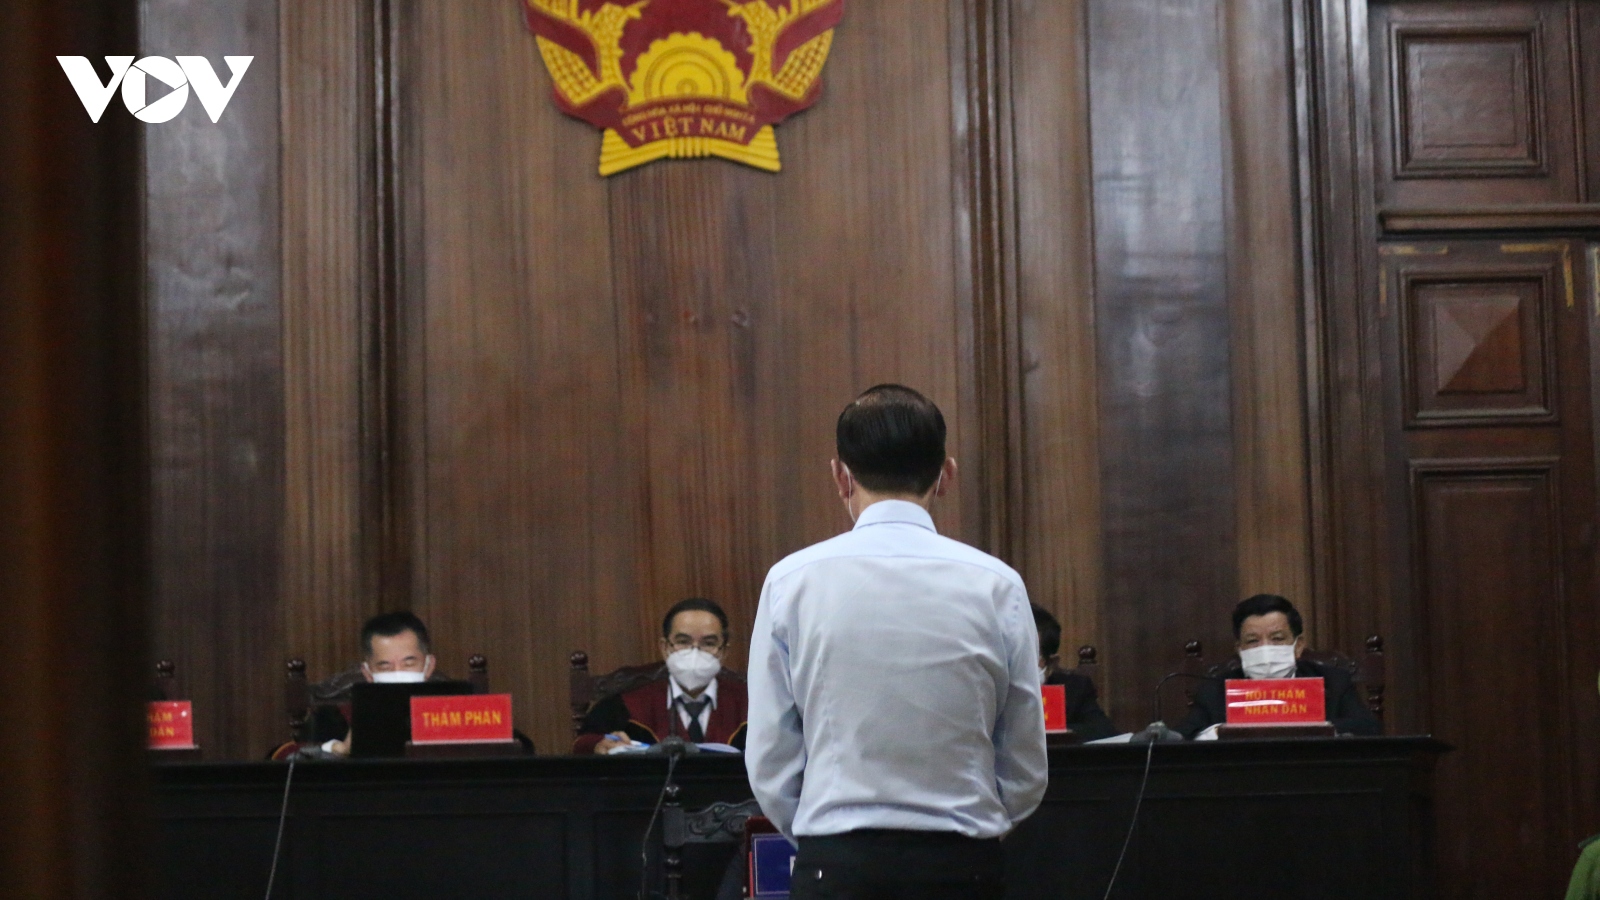 Bị cáo Trần Vĩnh Tuyến khẳng định không vụ lợi trong vụ án SAGRI